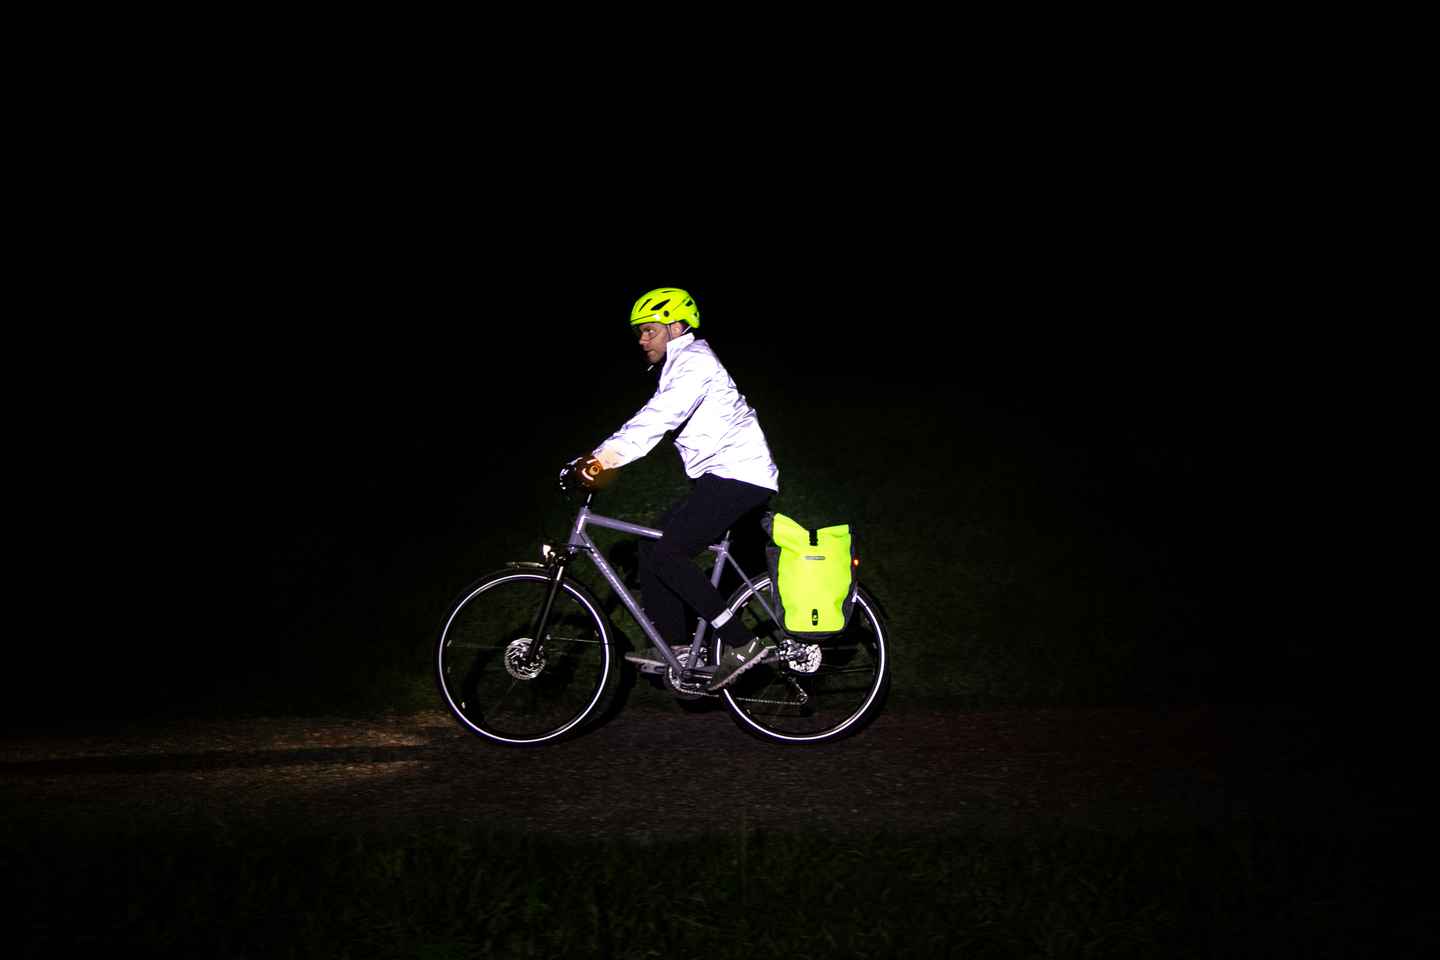 3m Reflektorband in Beleuchtung & Reflektoren fürs Fahrrad online kaufen